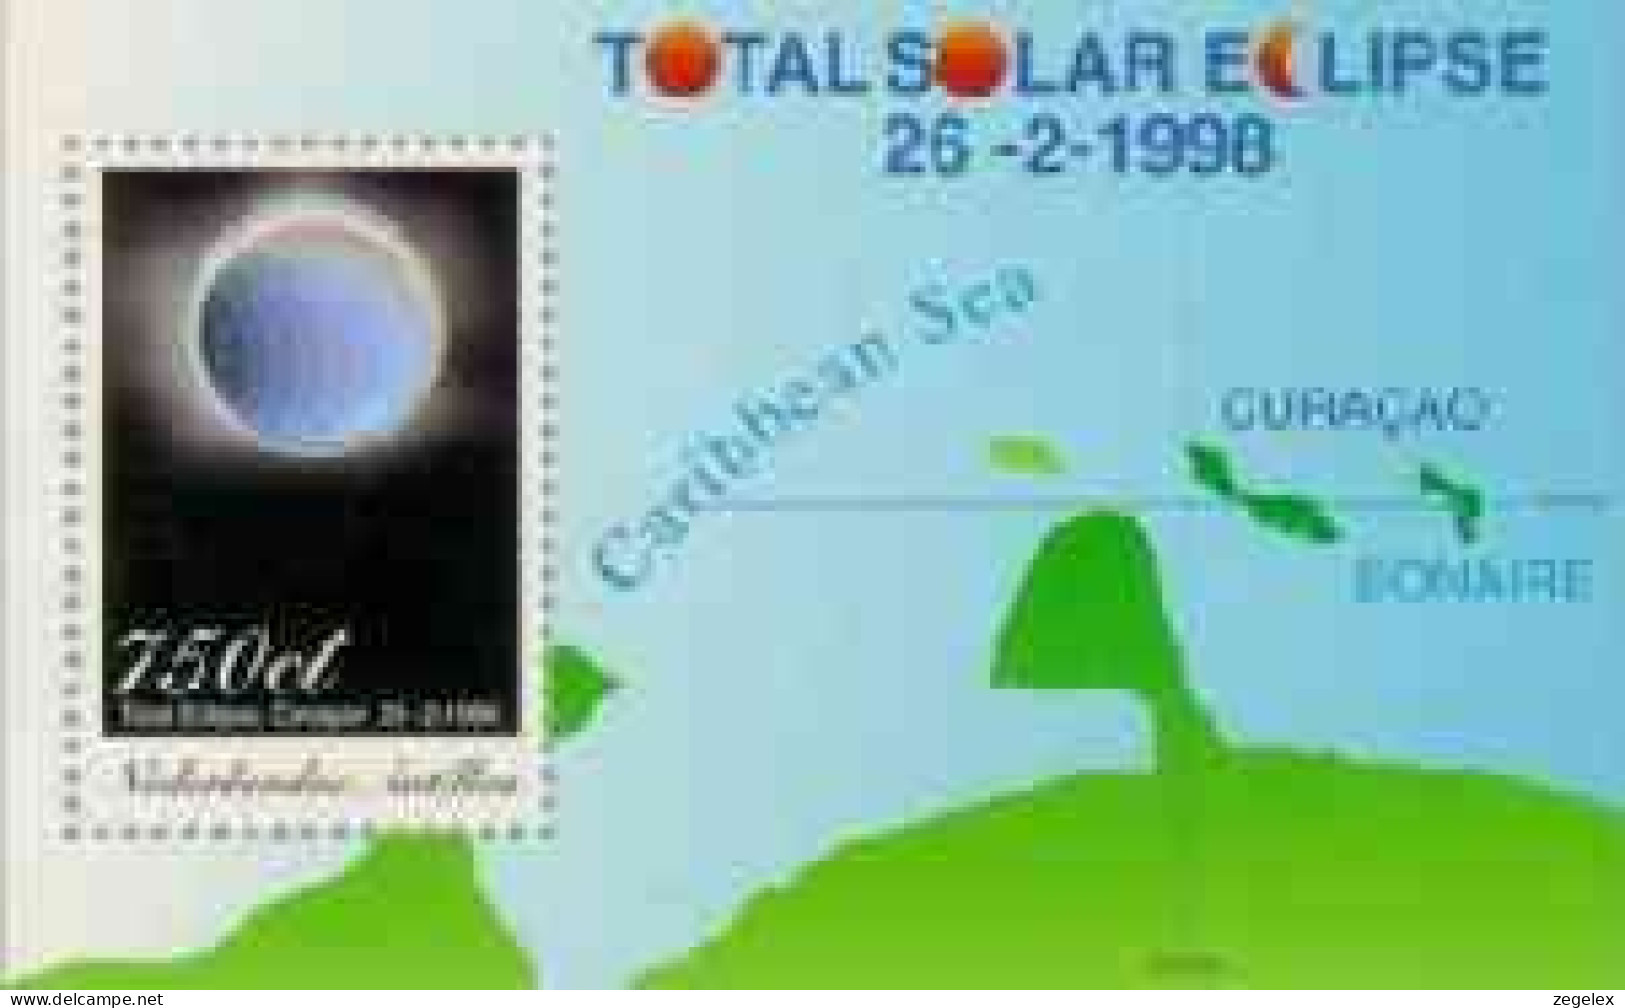 Ned Antillen 1998 Blok Zonsverduistering - Total Solar Eclipse NVPH 1204, MNH** Postfris - Curacao, Netherlands Antilles, Aruba